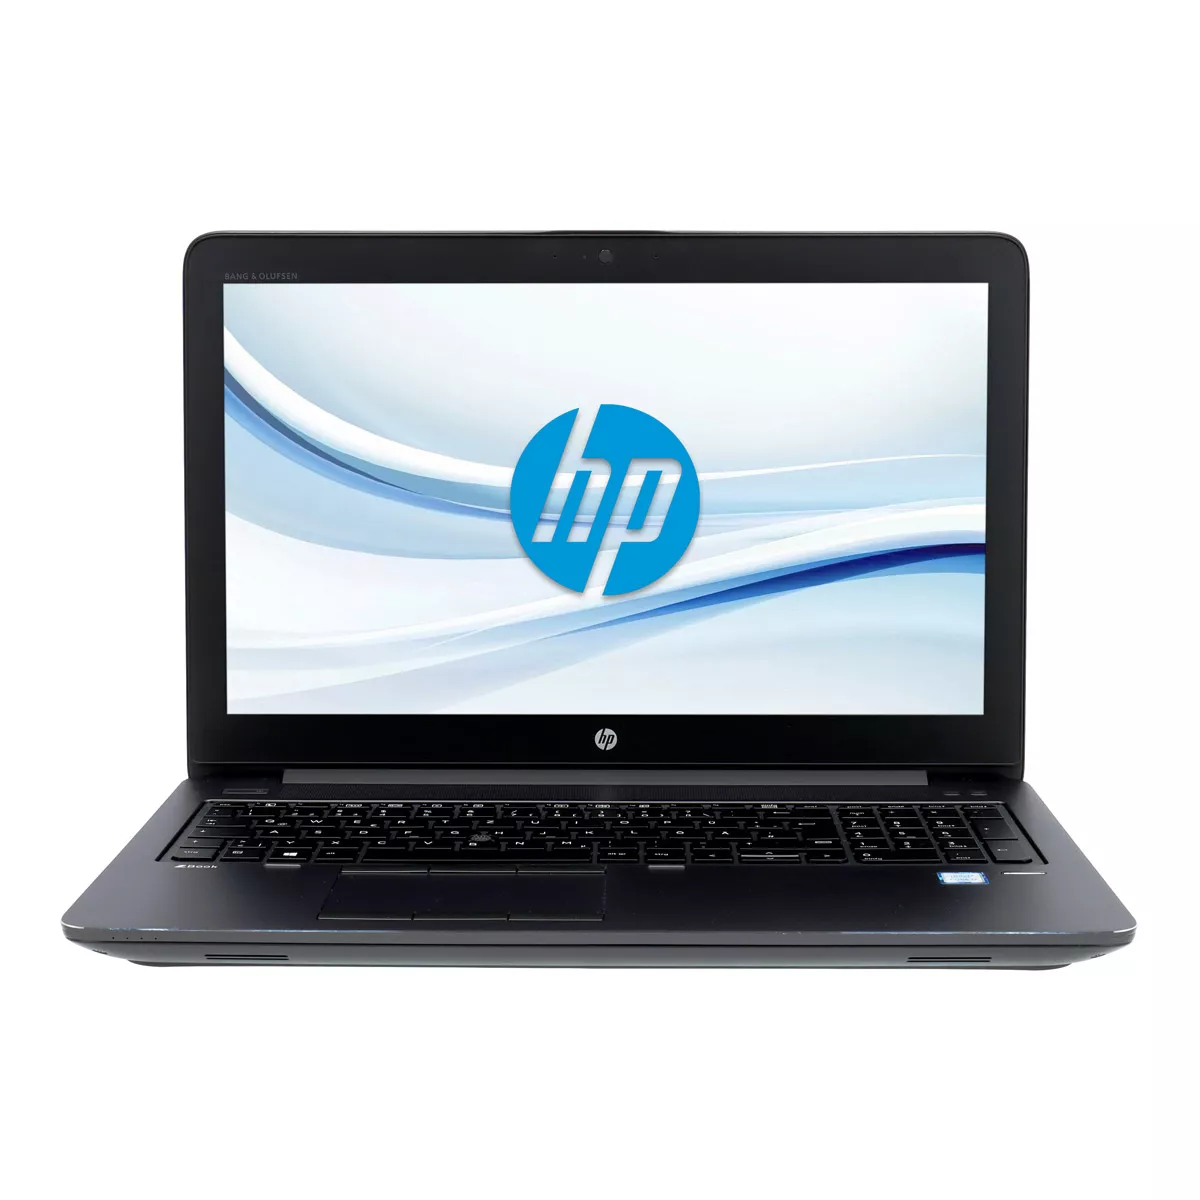 HP ZBook 15 G3 Core i7 6820HQ nVidia Quadro M2000M Full-HD 32 GB 500 GB M.2 SSD Webcam A+